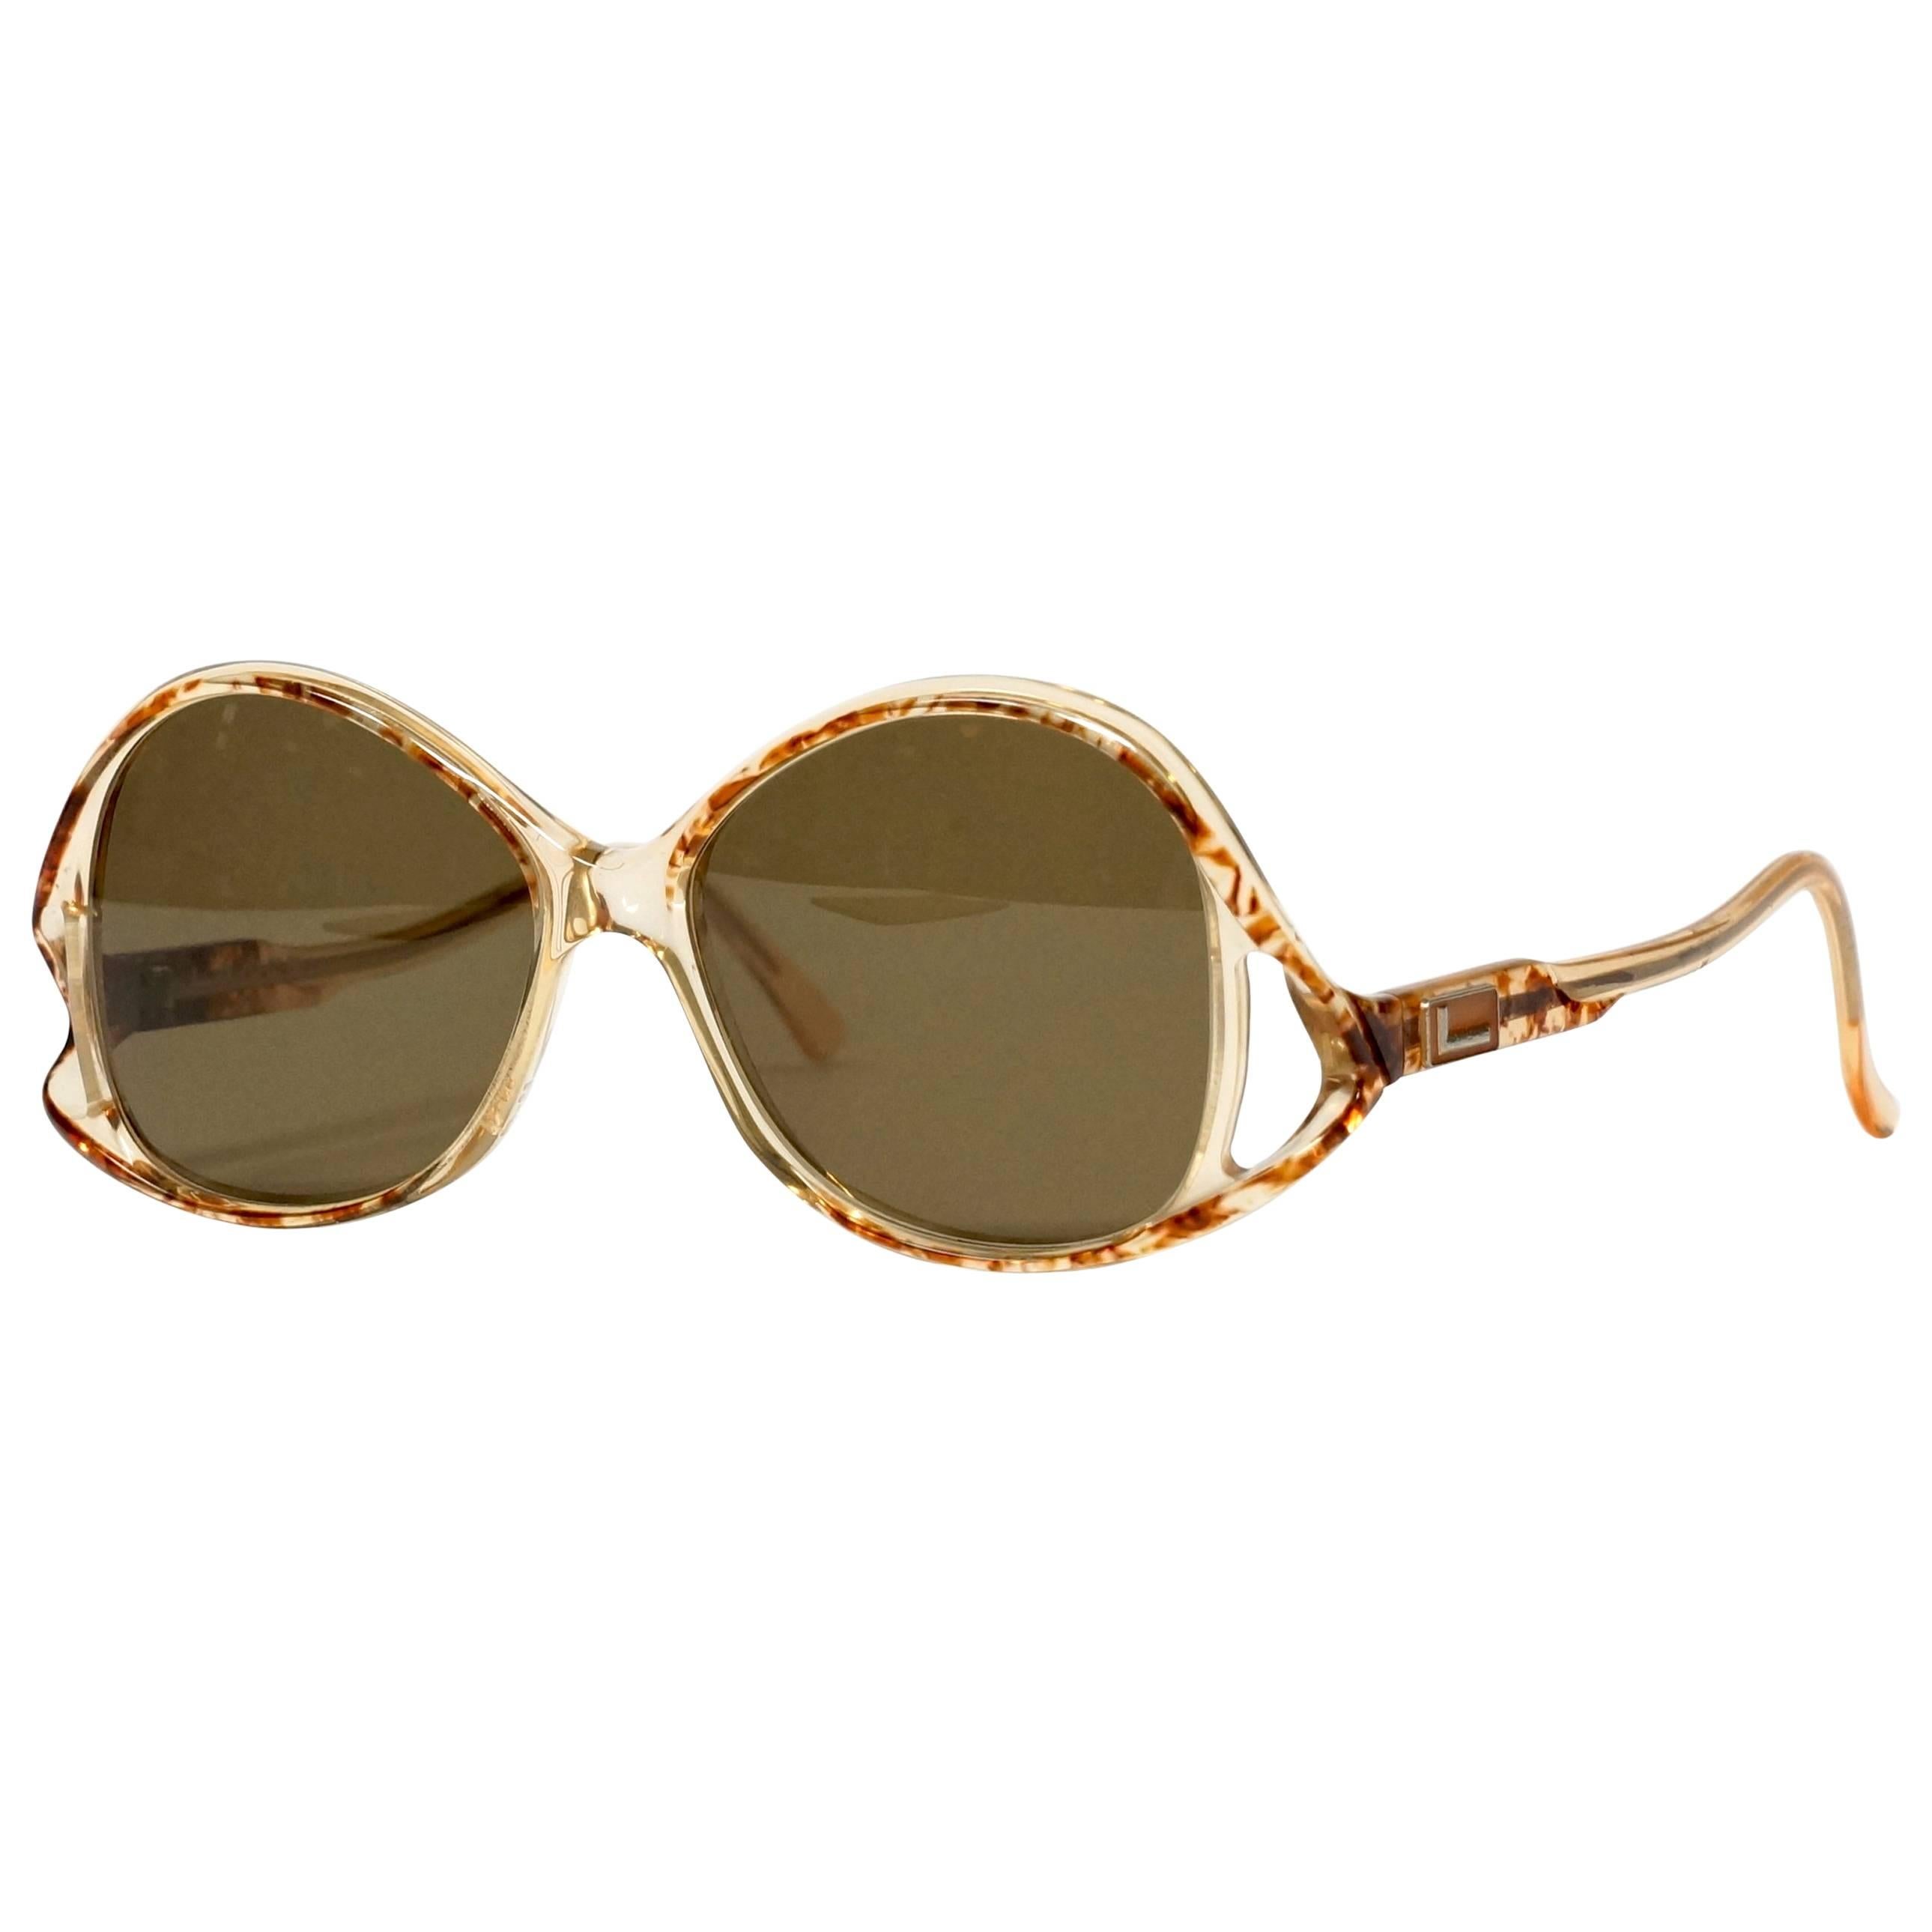 Lancel Paris Vintage Sunglasses For Sale